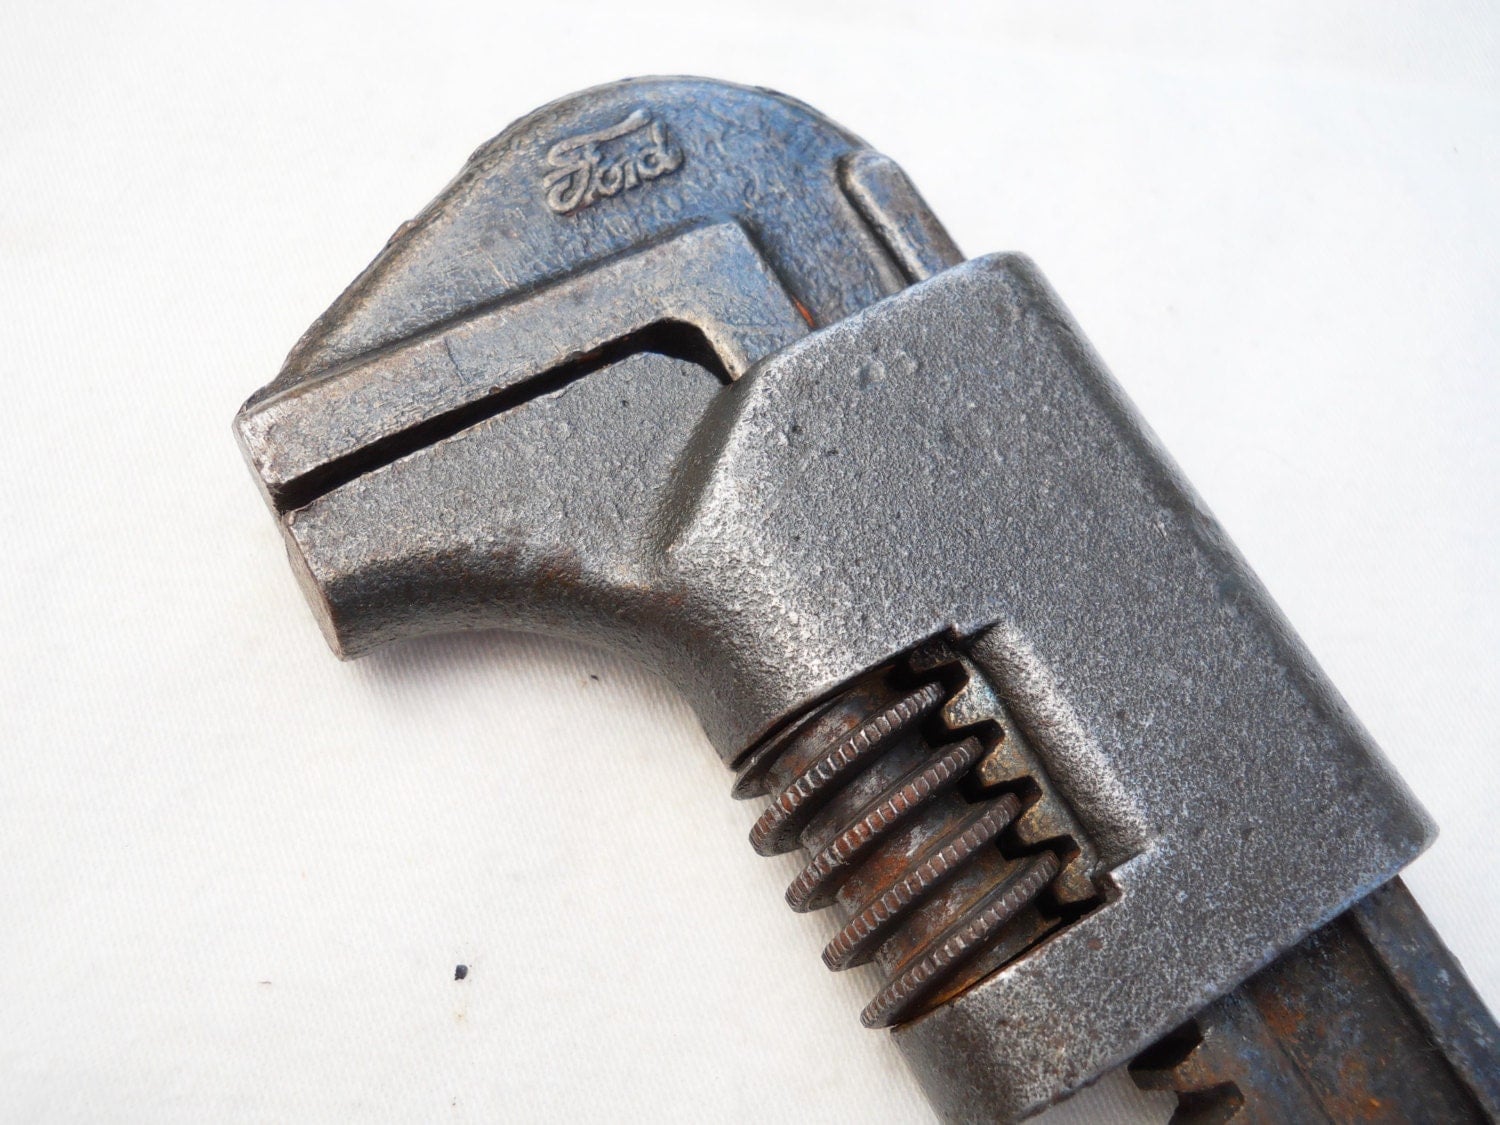 Vintage ford adjustable wrench #1